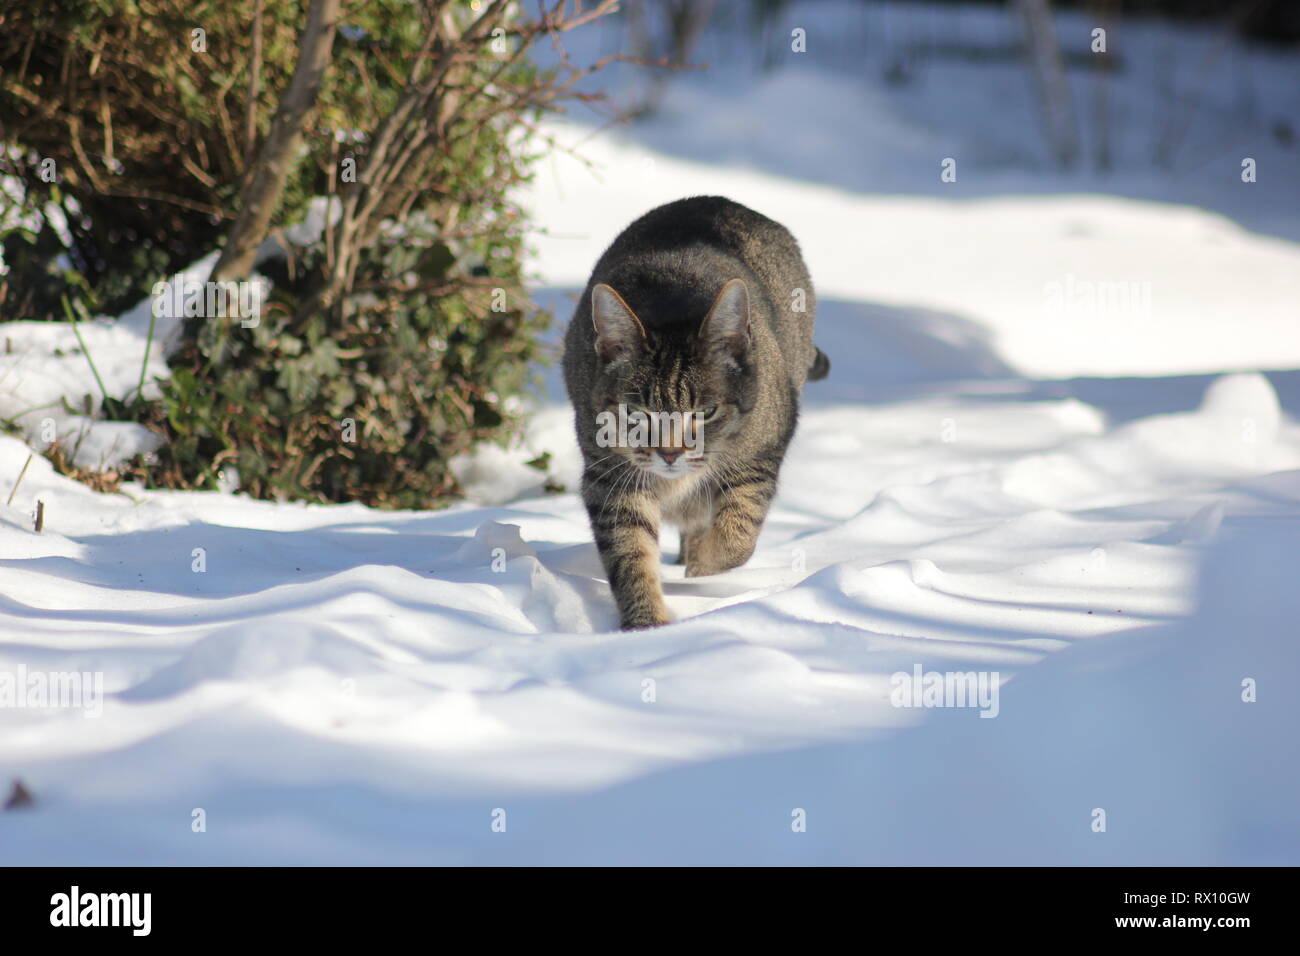 Le chat dans la neige, les pattes s'enfoncent dans la neige, se déplaçant vers l'avant en regardant dans la caméra. Banque D'Images